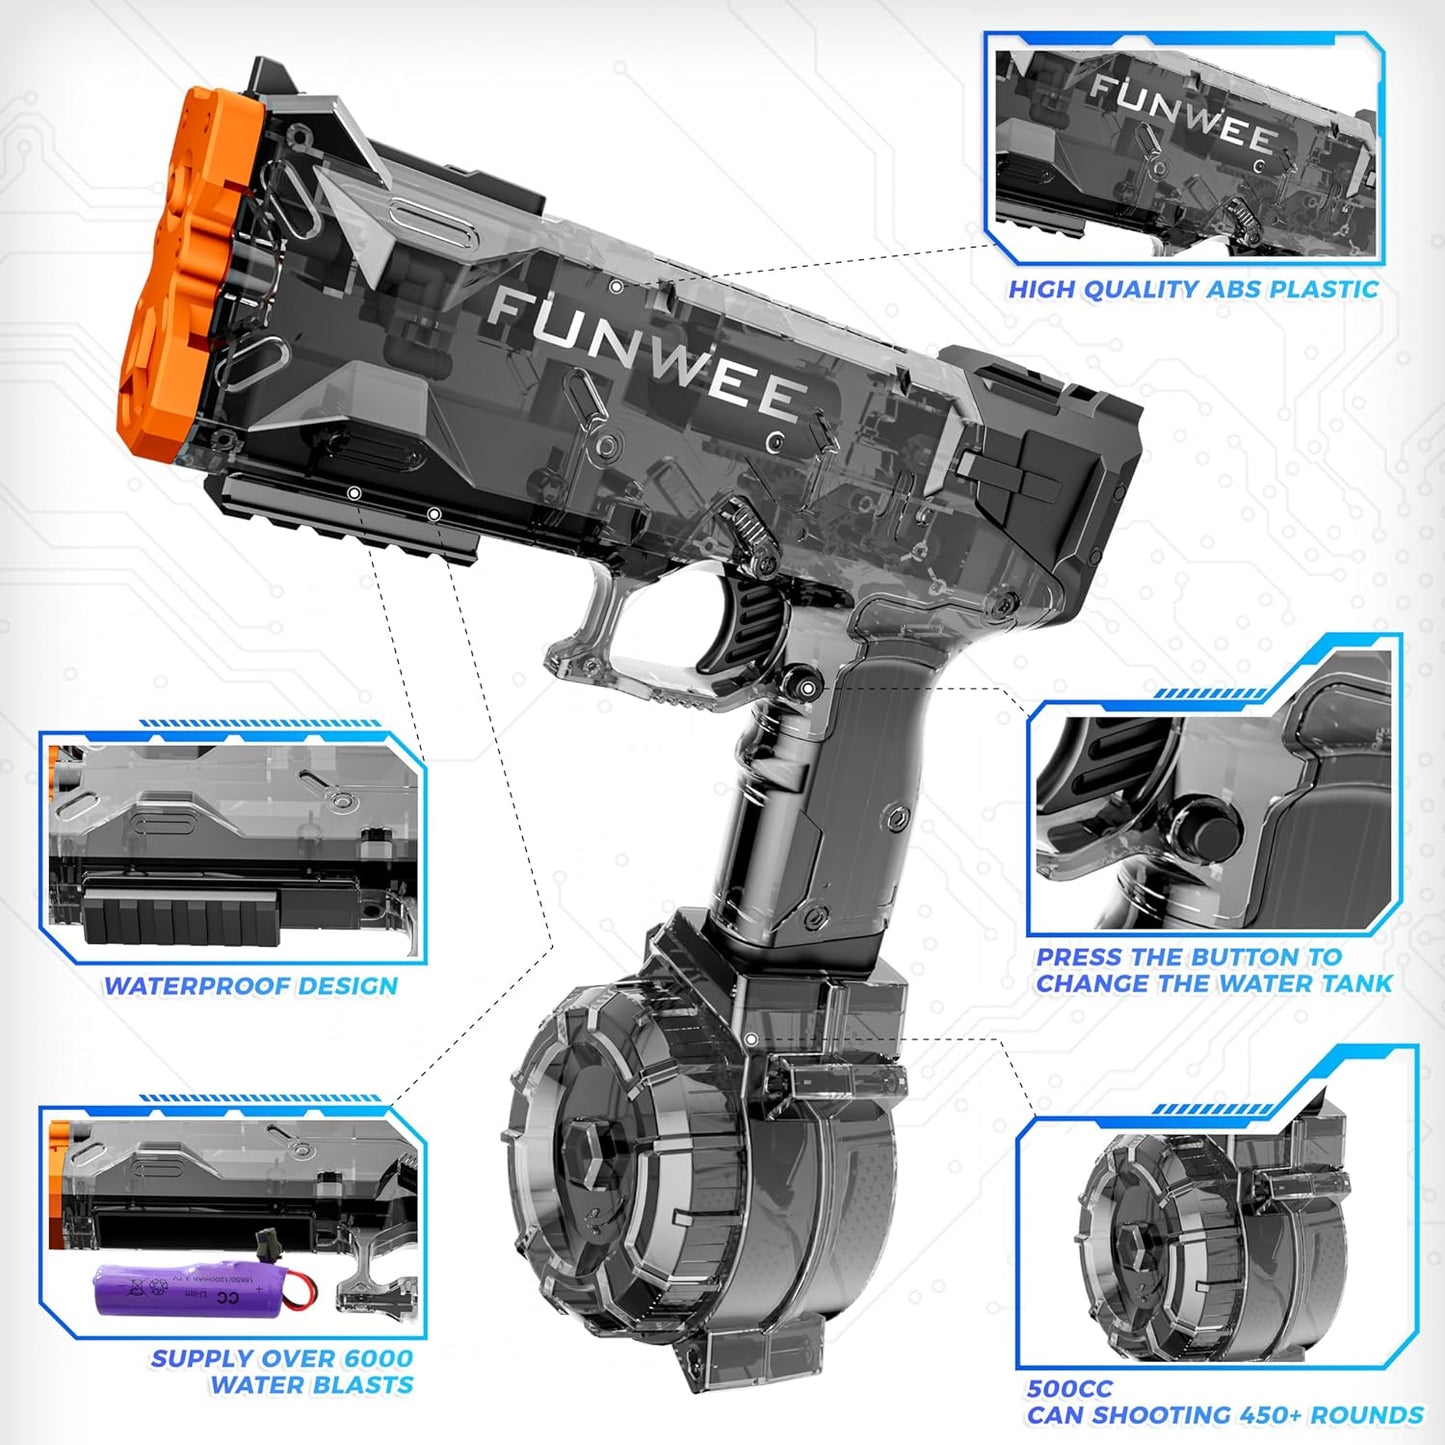 Funwee Electric Water Pistol (Black)